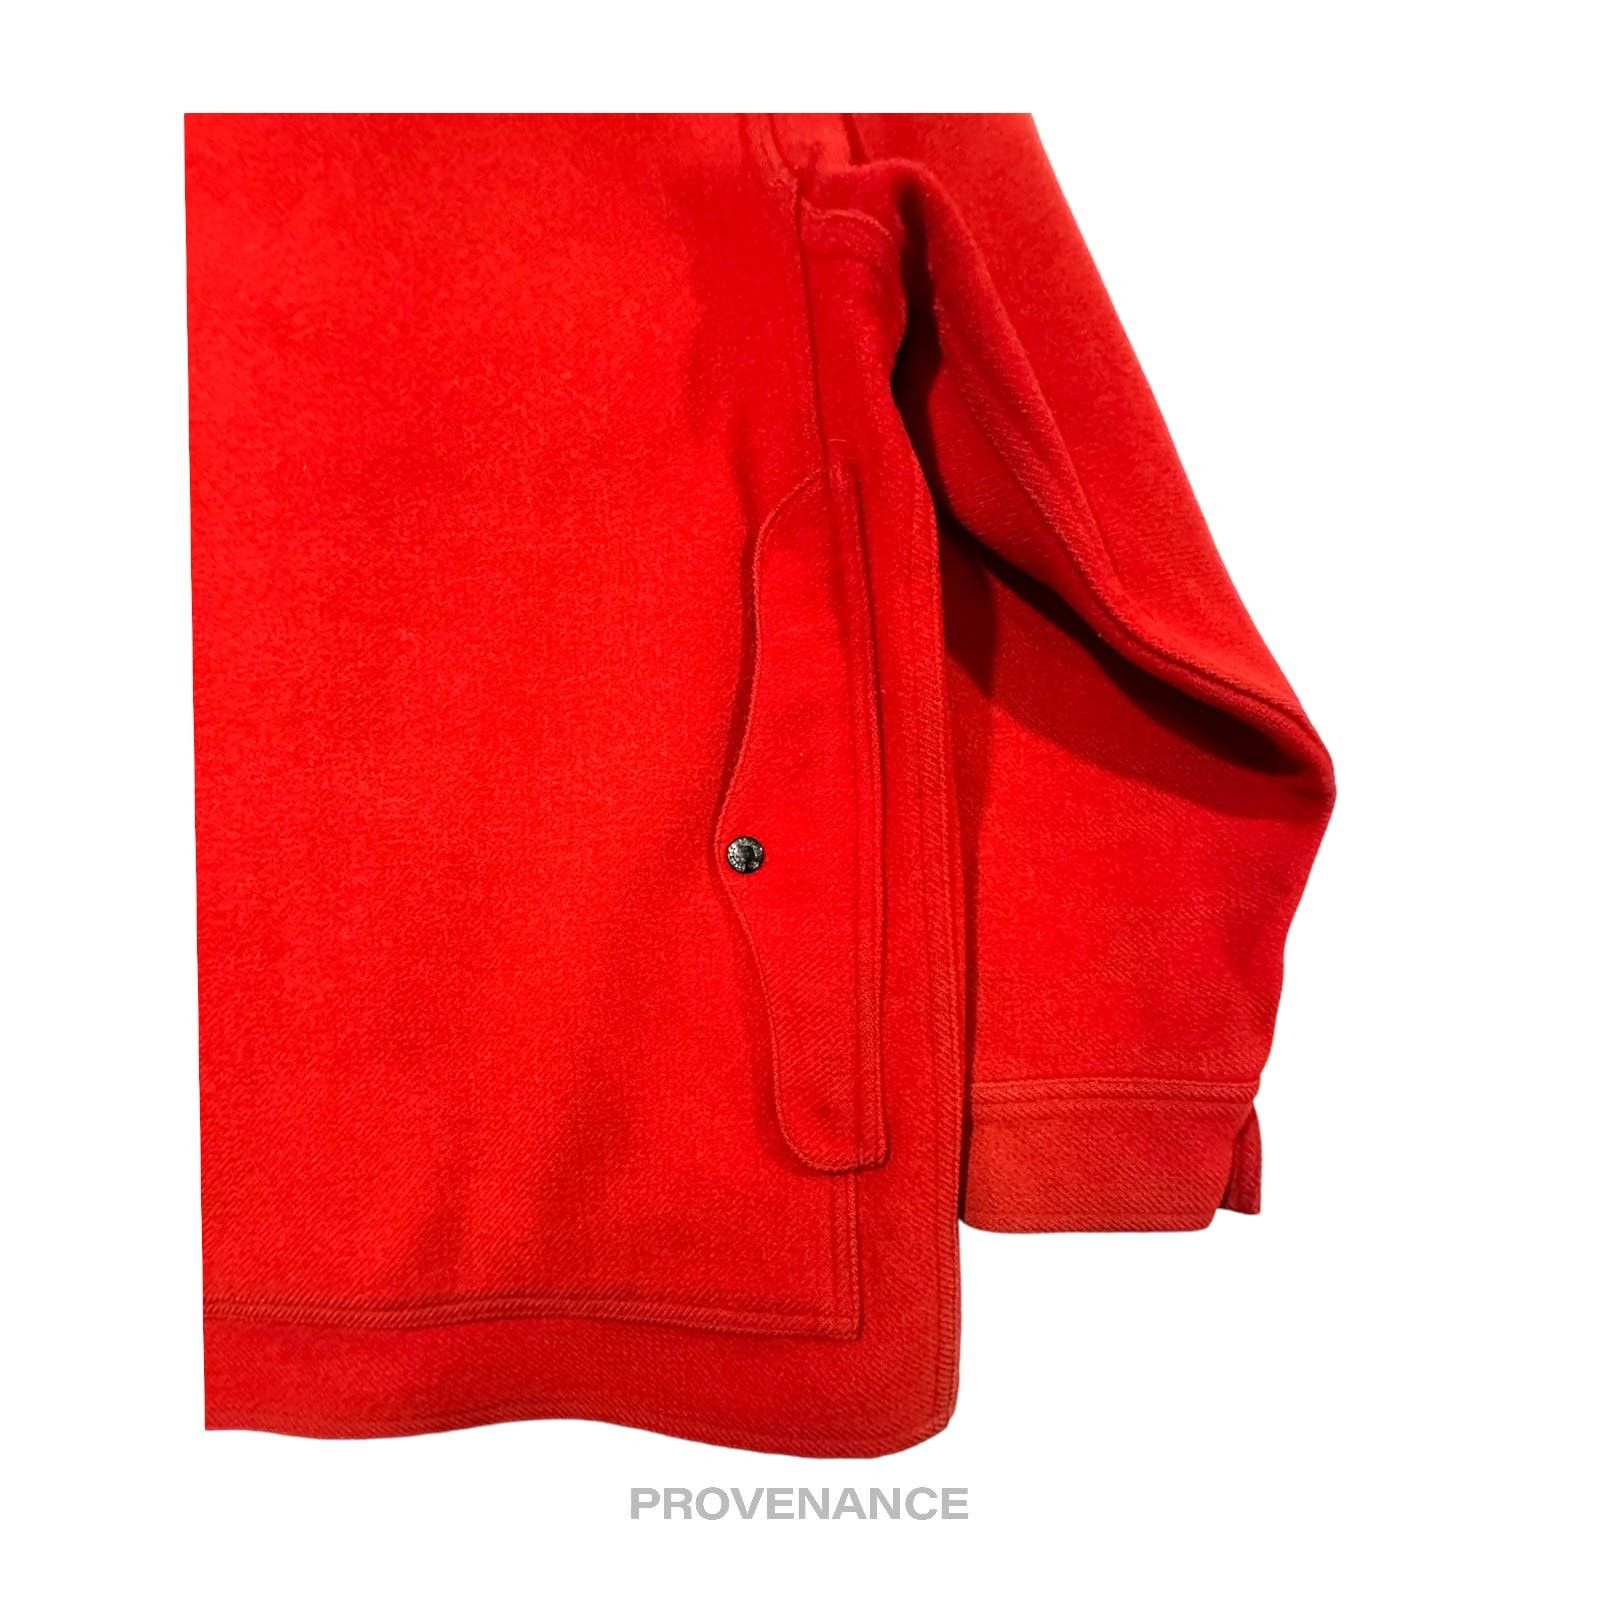 Filson 🔴 Filson Mackinaw Wool Cruiser Jacket - Scarlet Red 42 M Size US M / EU 48-50 / 2 - 8 Thumbnail